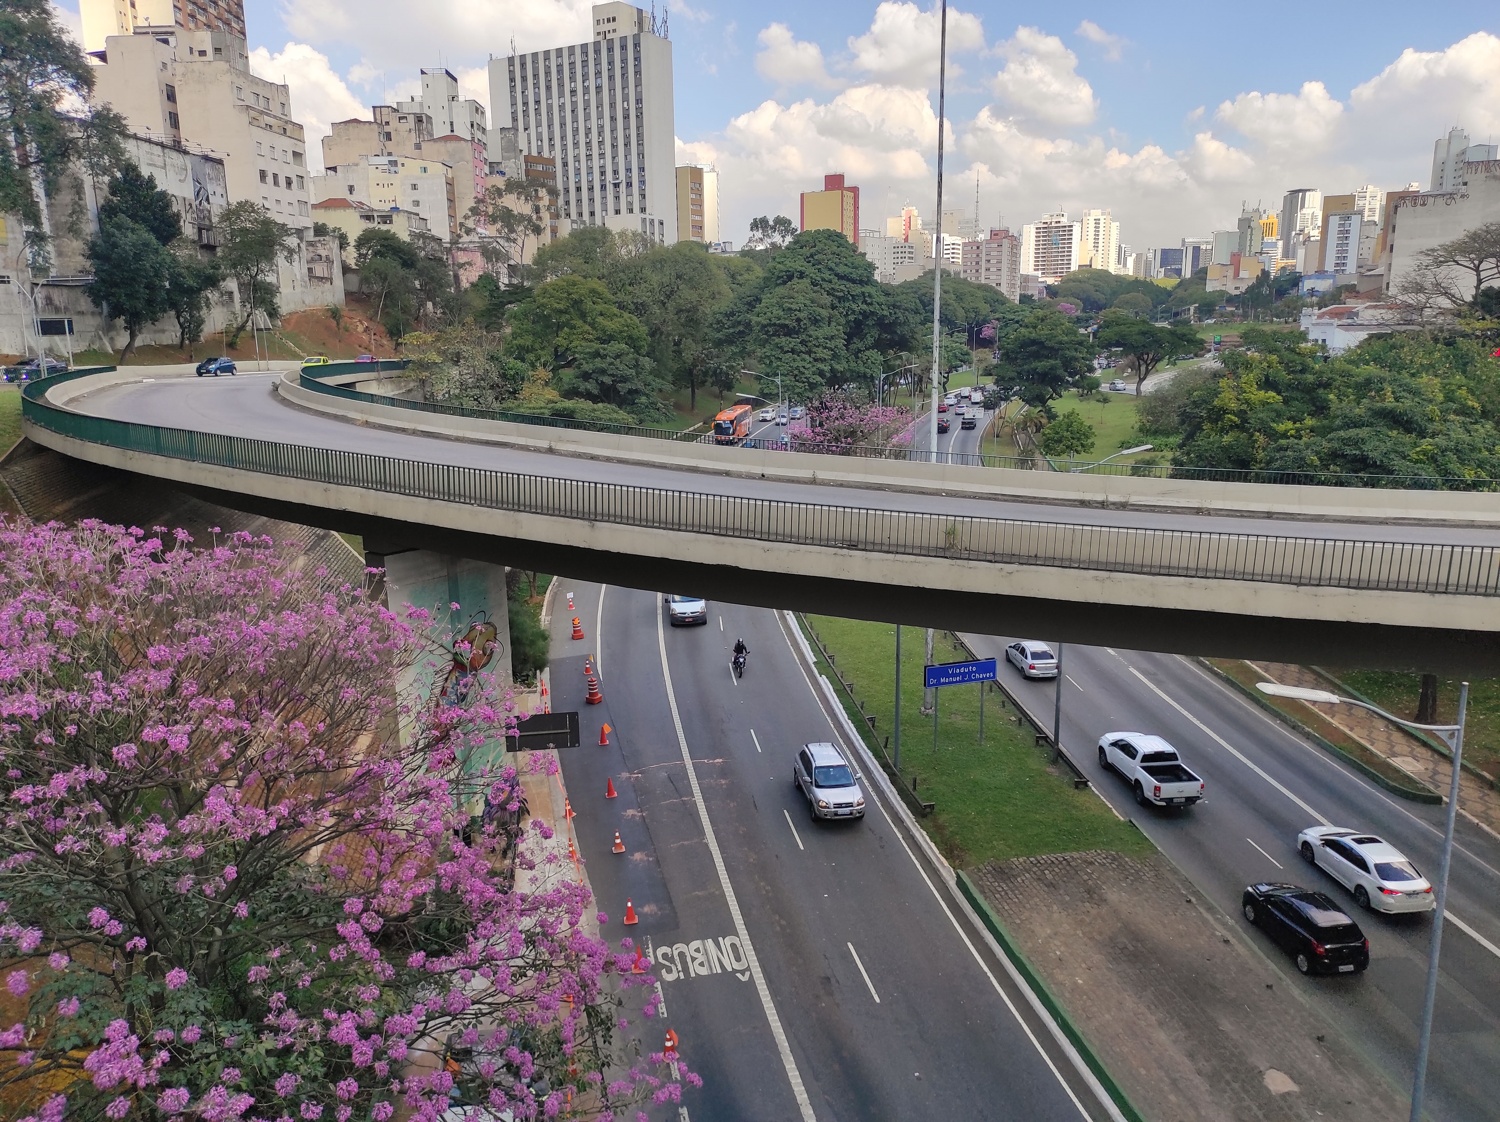 Бразилия: Сан-Паулу (2021). Часть I 